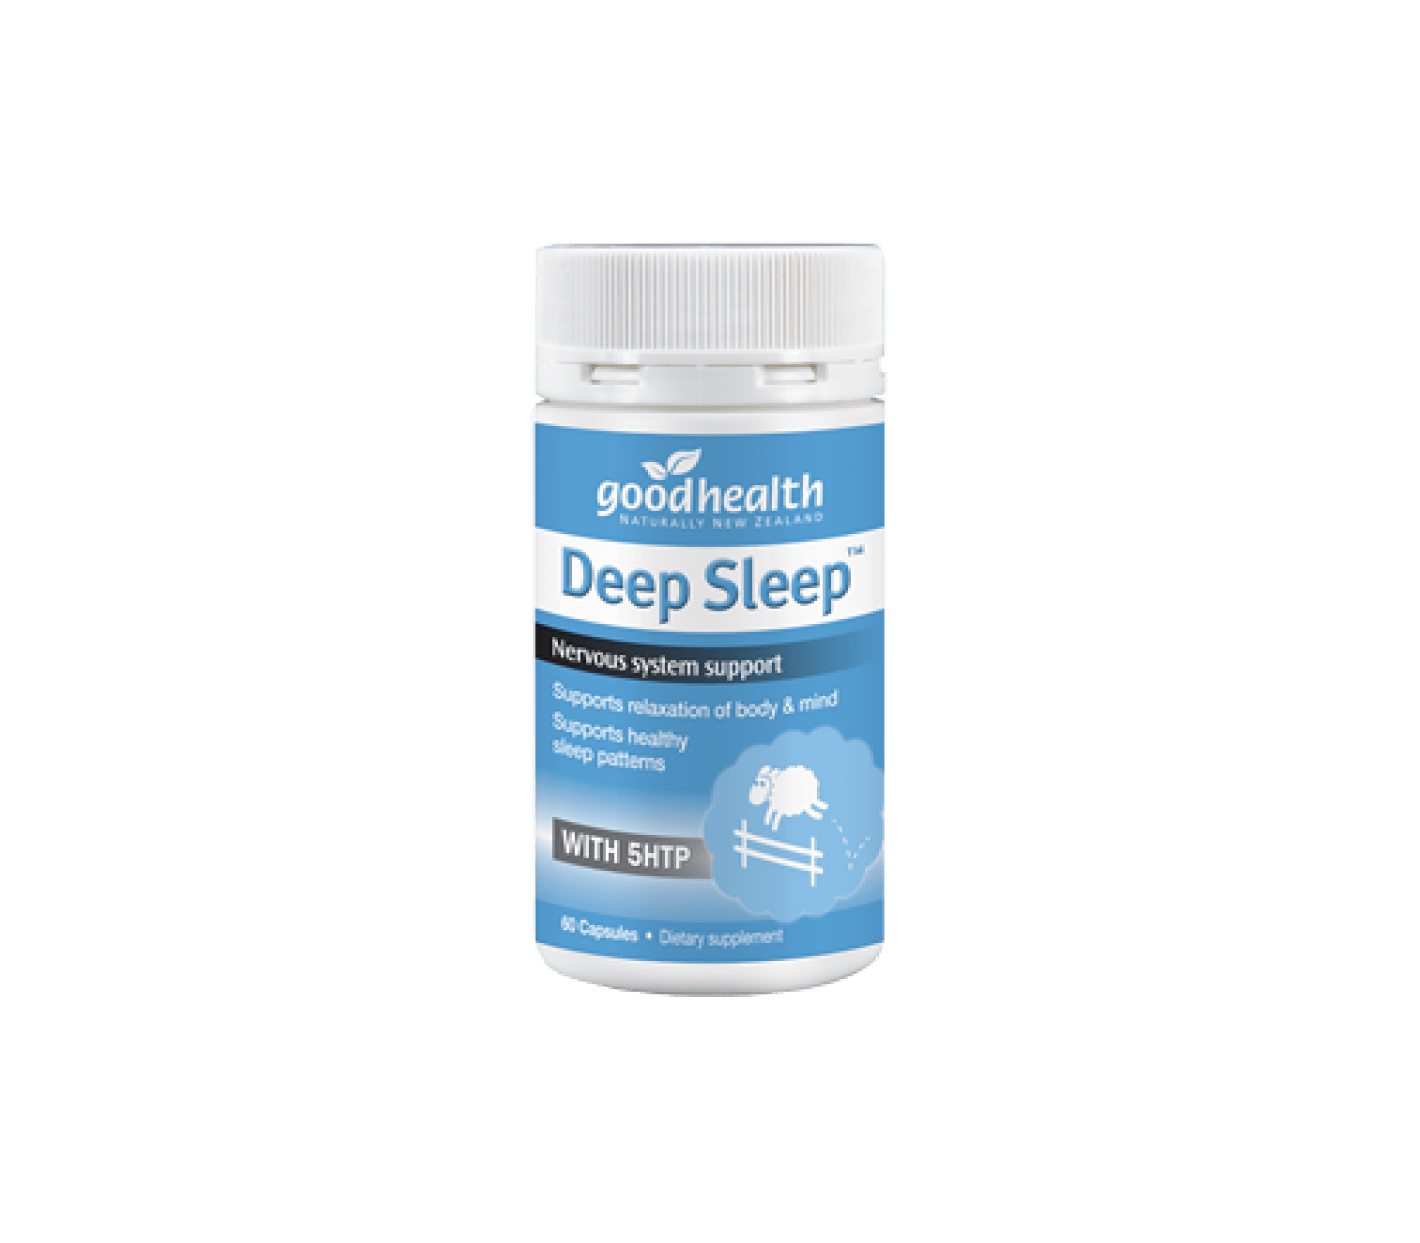 Mopani Pharmacy Good Health Good Health Deep Sleep Caps, 30's 9400569011102 132673